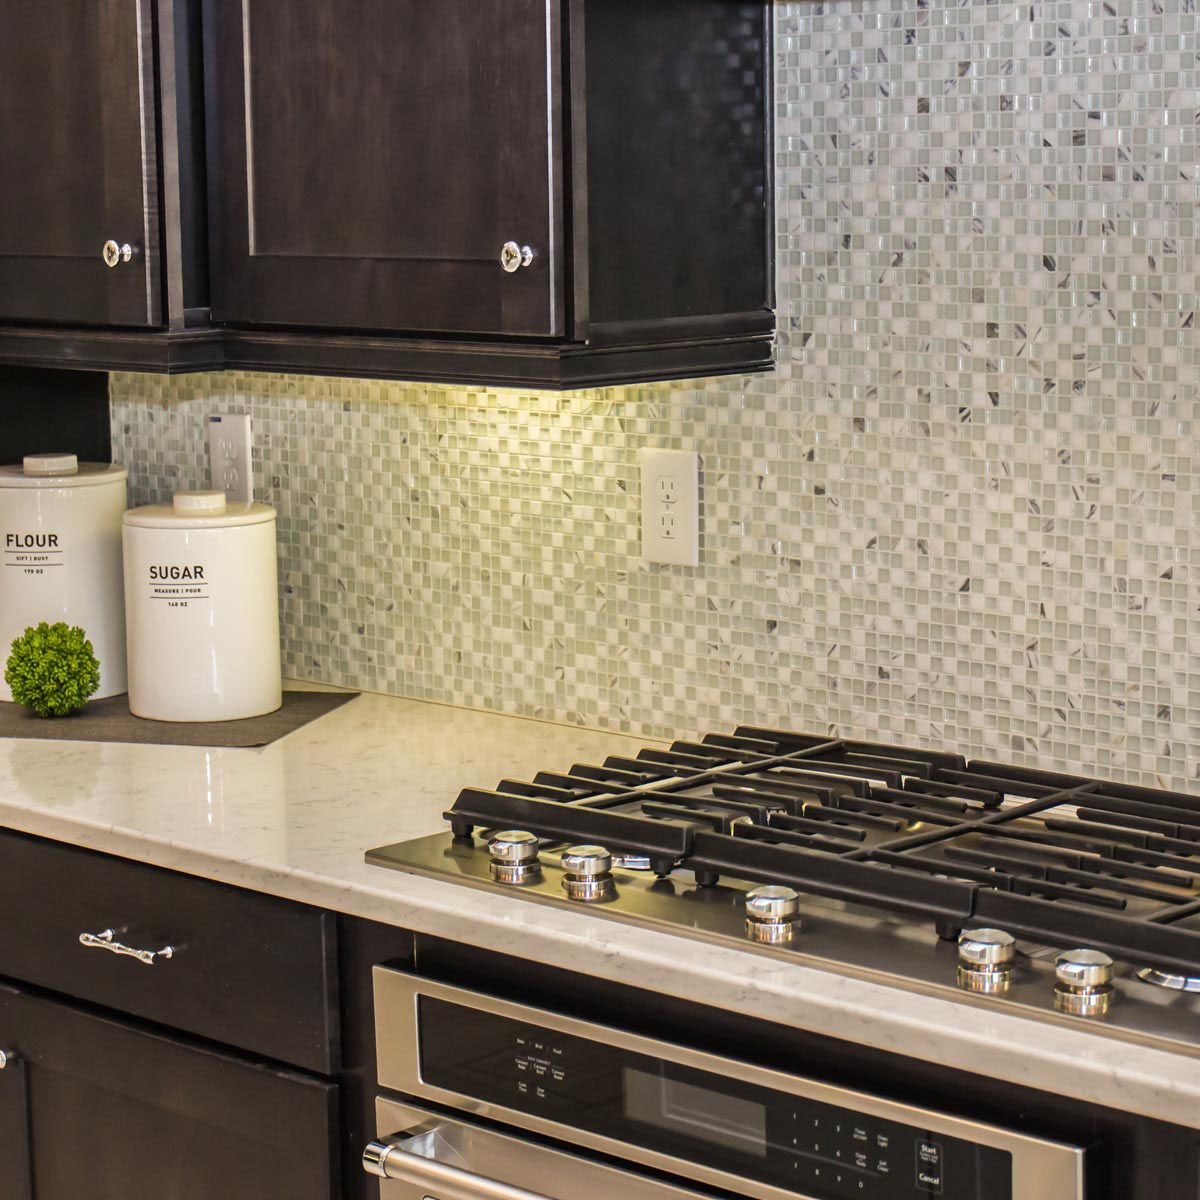 White Mosaic Backsplash In Kitchen With Dark Cabinets Shutterstock 1006681858 1 ?w=1200